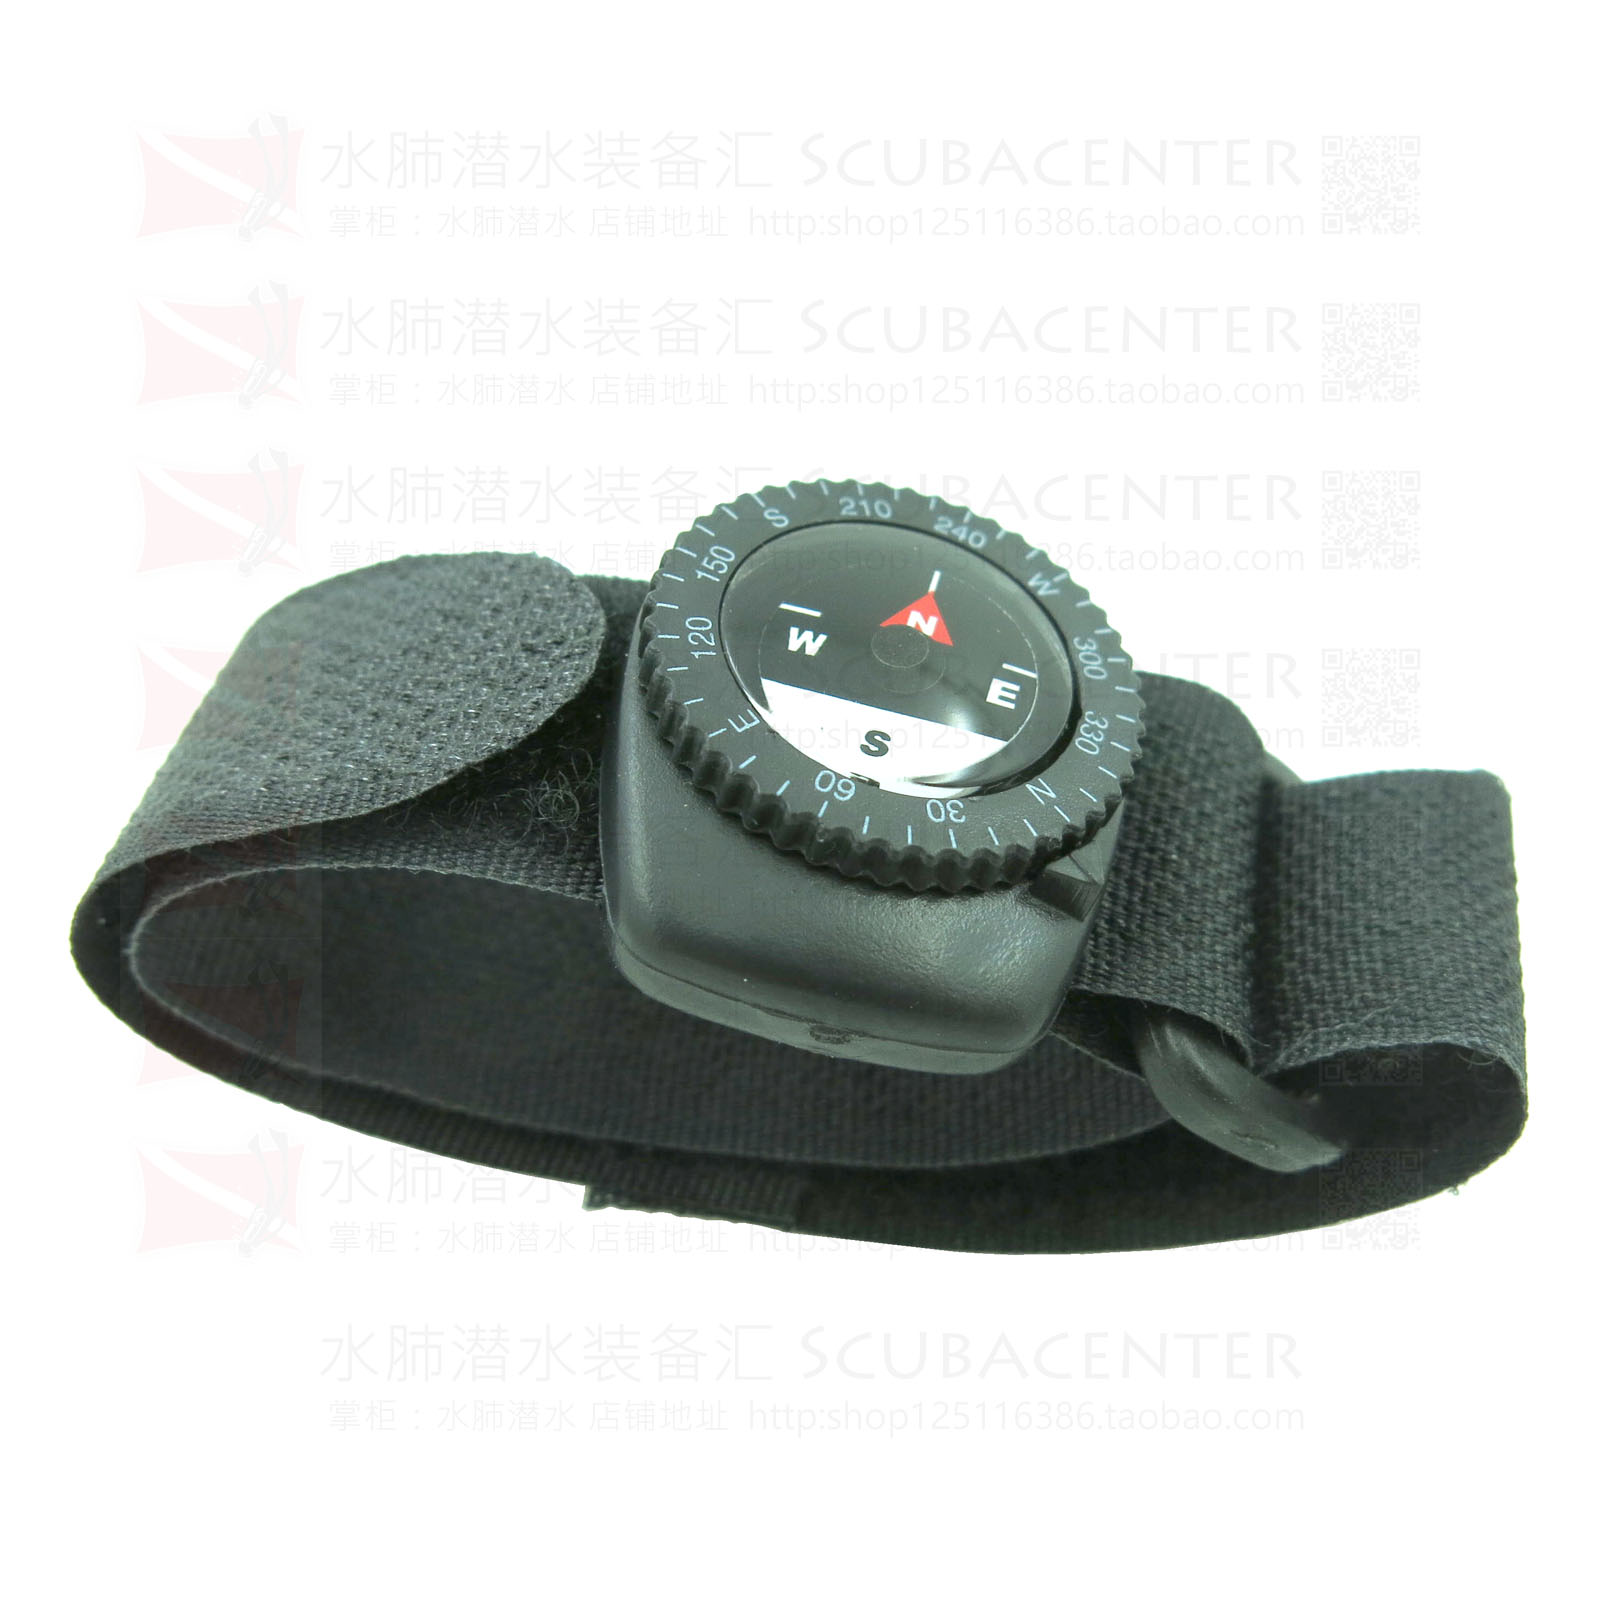 【水肺潜水装备汇】ScubaCC 潜水指南针腕带式指北针D4i Novo可用